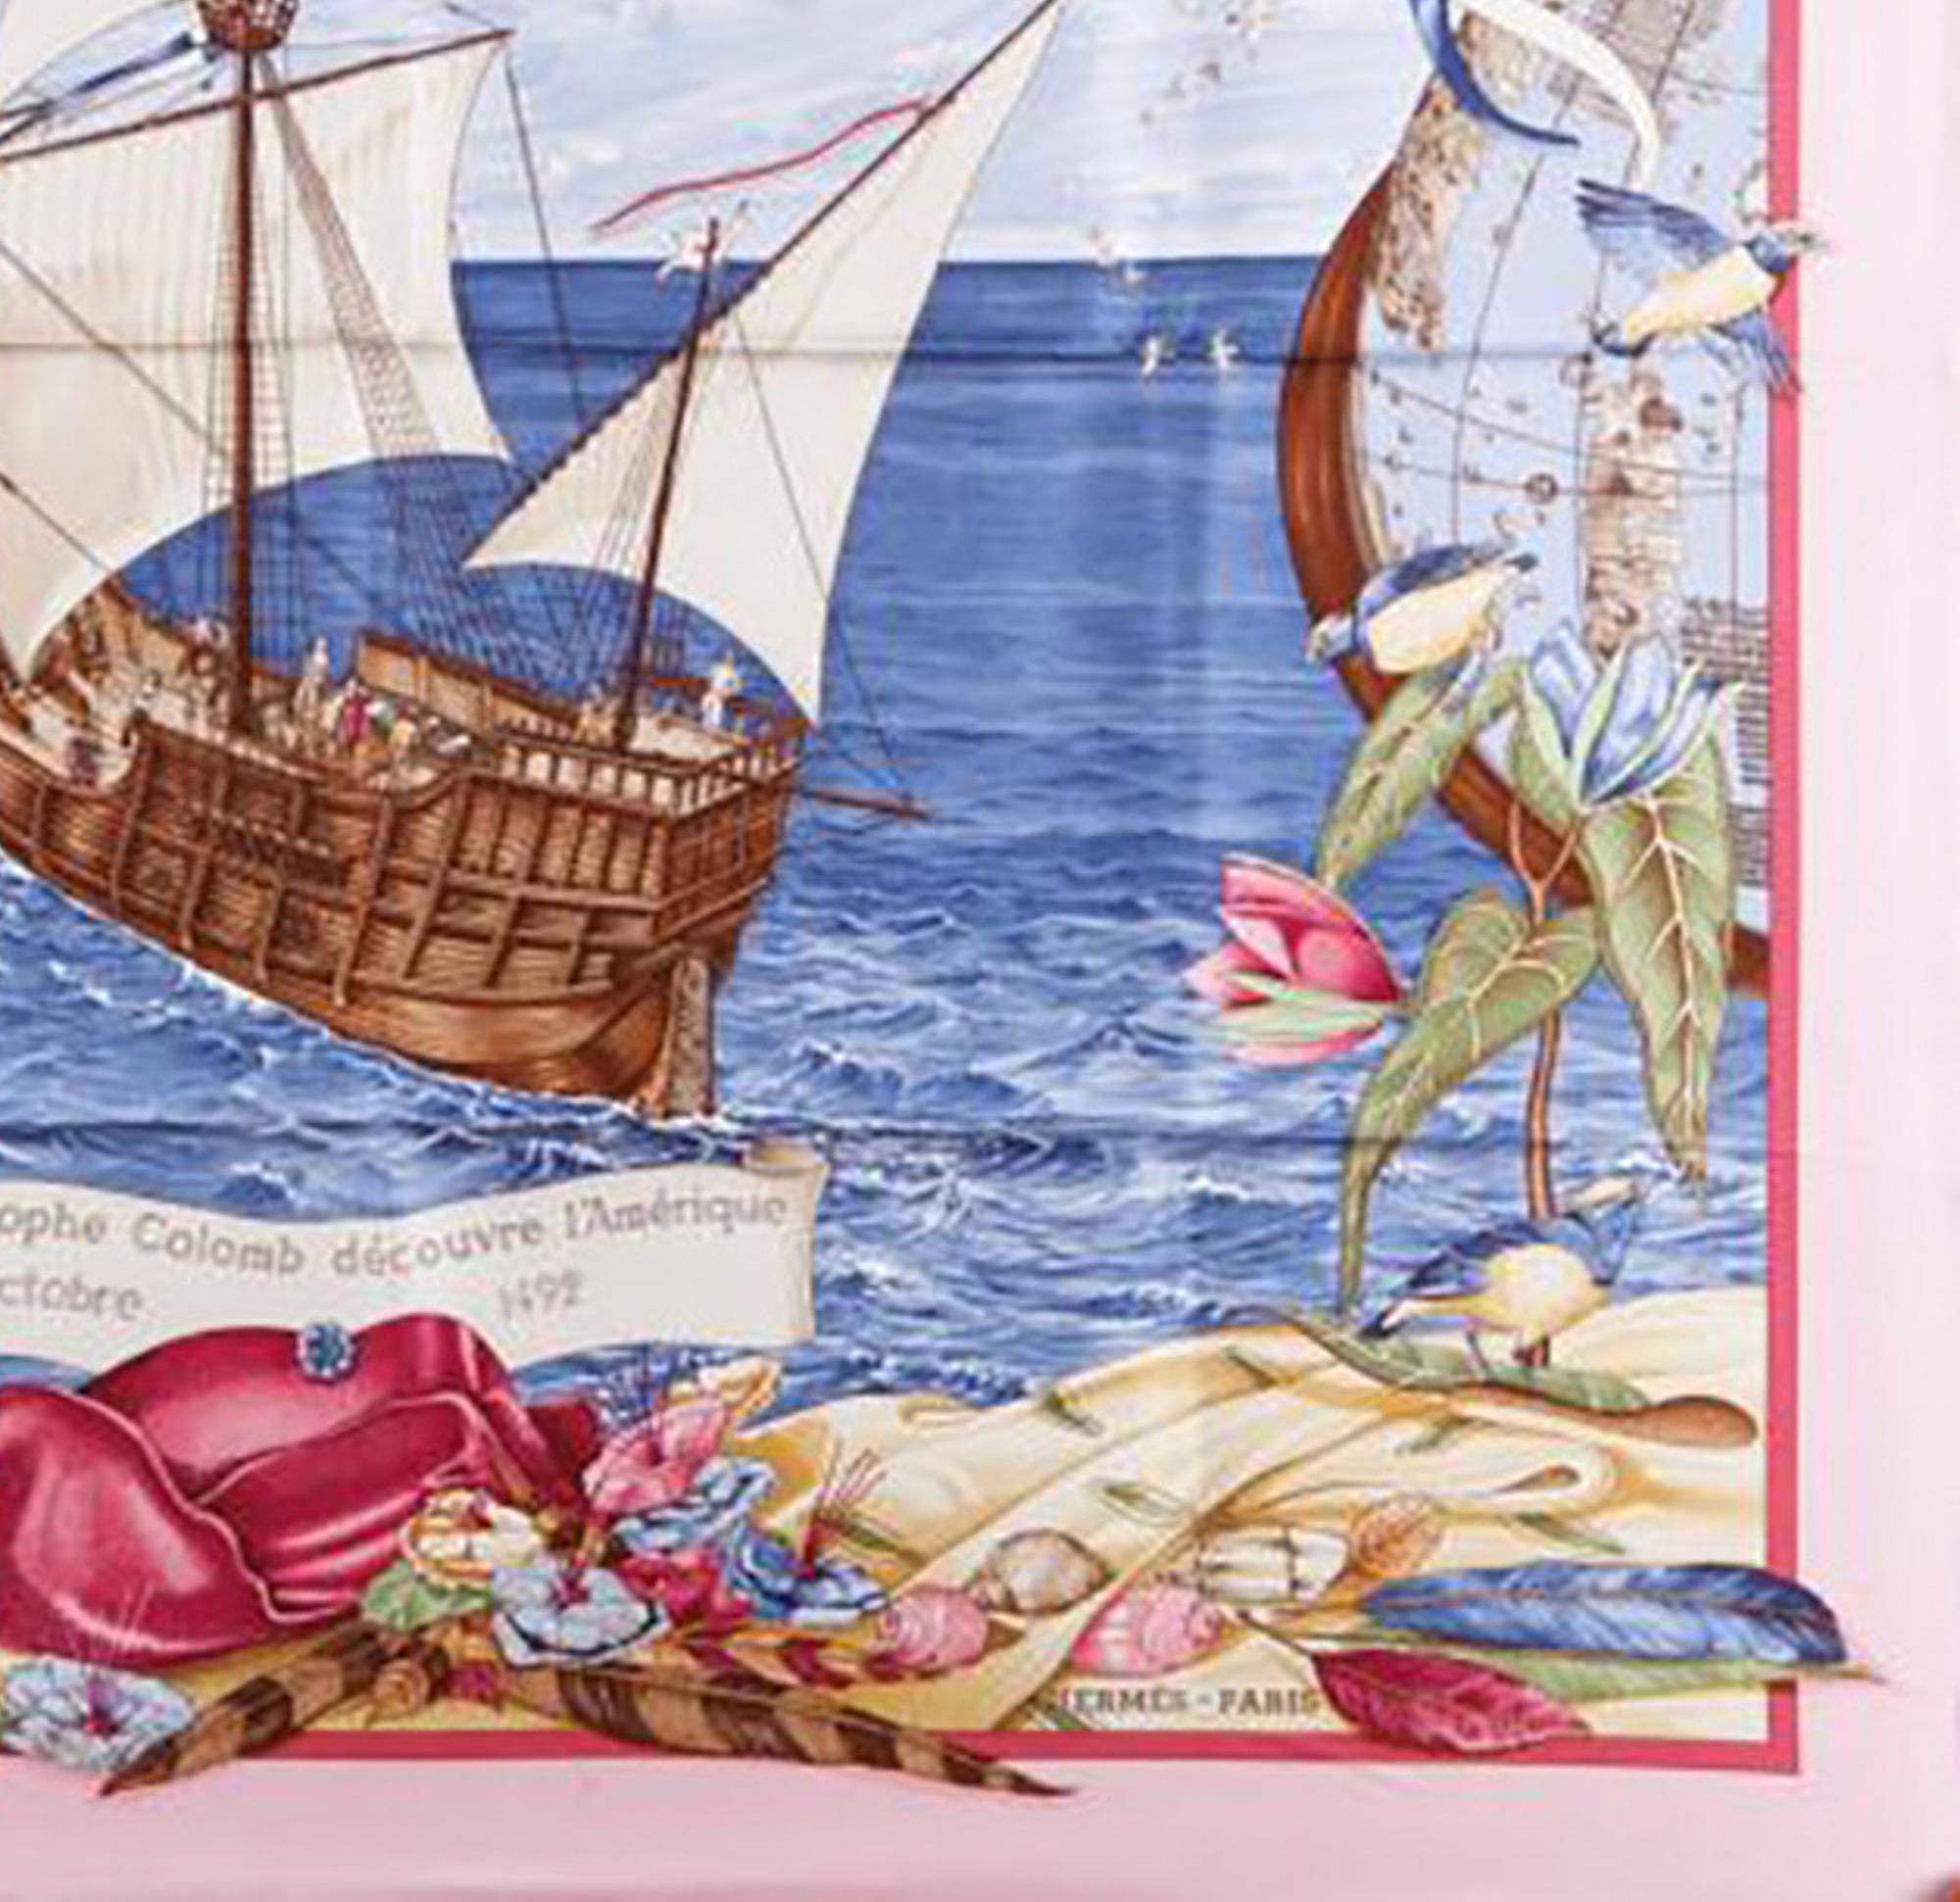 1992 Hermes C.Colomb Decouvre l Amerique by C.de Percevaux Pink Silk Scarf 2